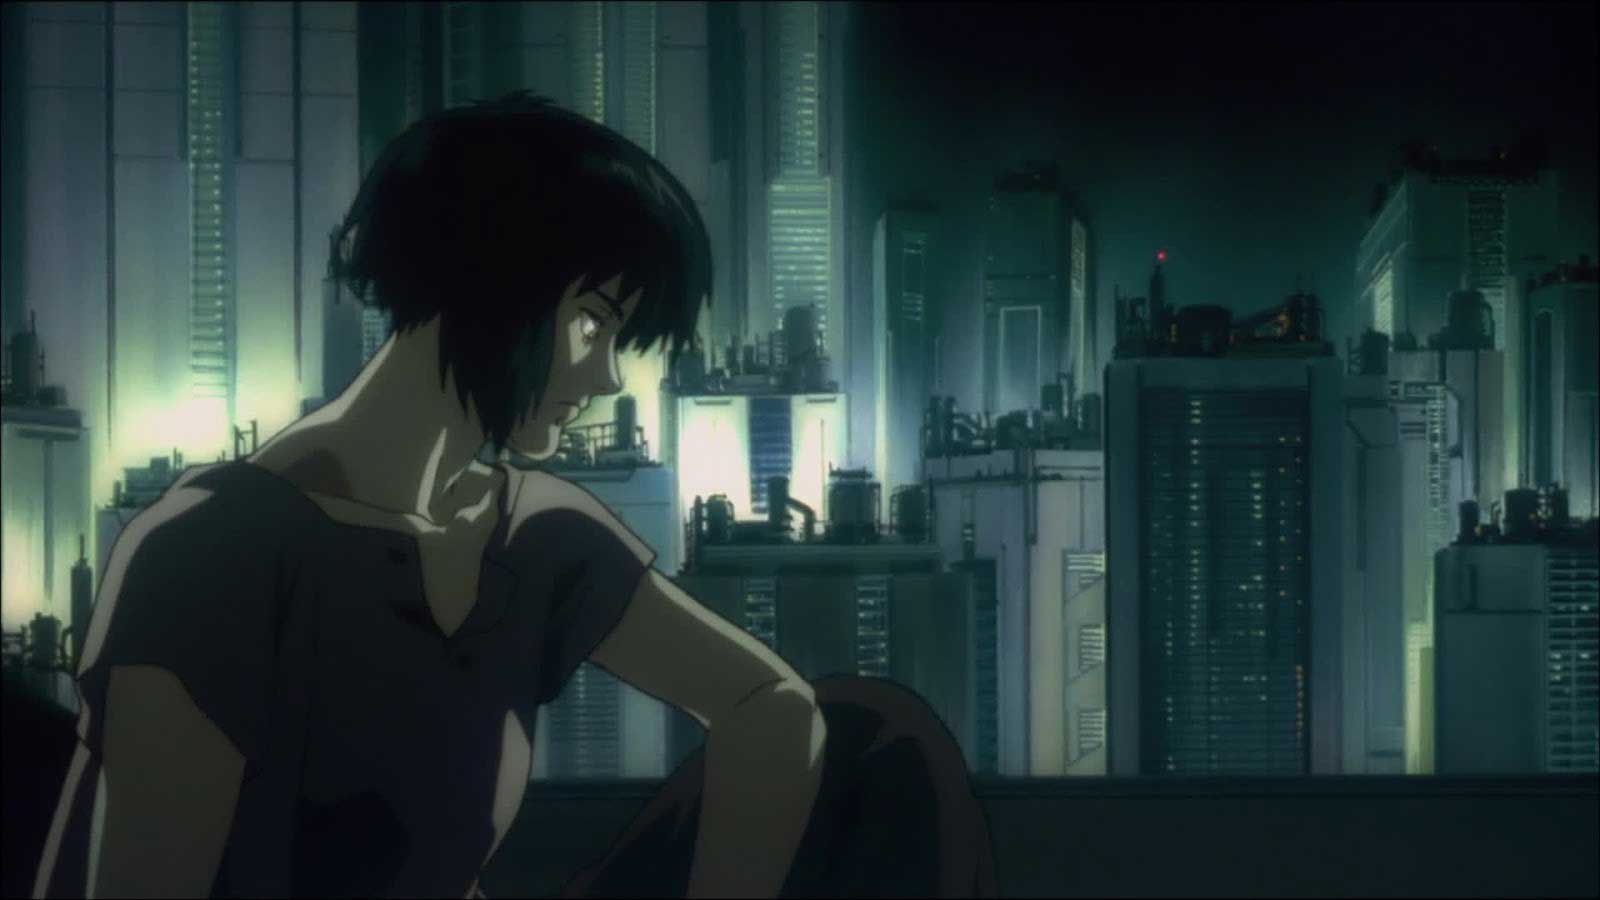 انیمه Ghost in the Shell و نگاه شخصیت اصلی با غم به سمت پایین در مقابل تصویر شهر پیشرفته و ژاپنی